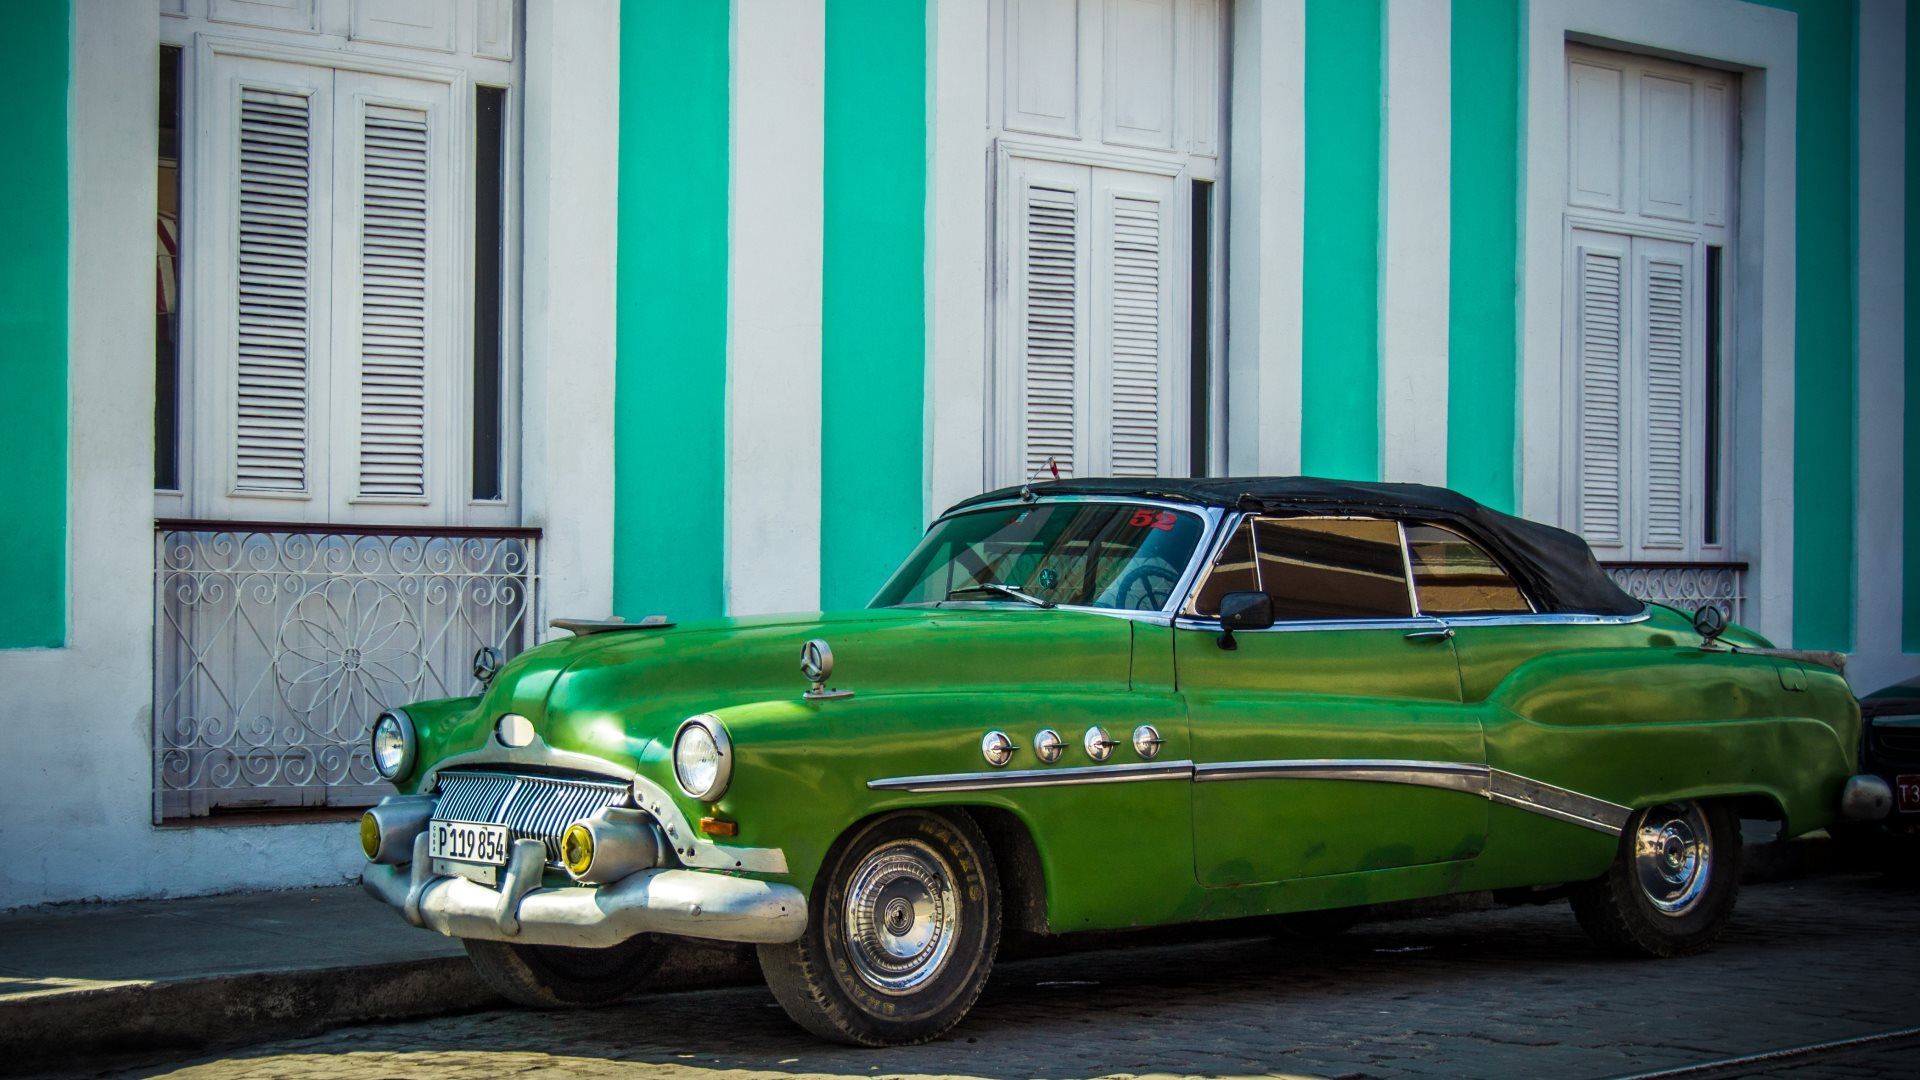 Colors Of Cuba - Cuba Cars Wallpaper Hd , HD Wallpaper & Backgrounds